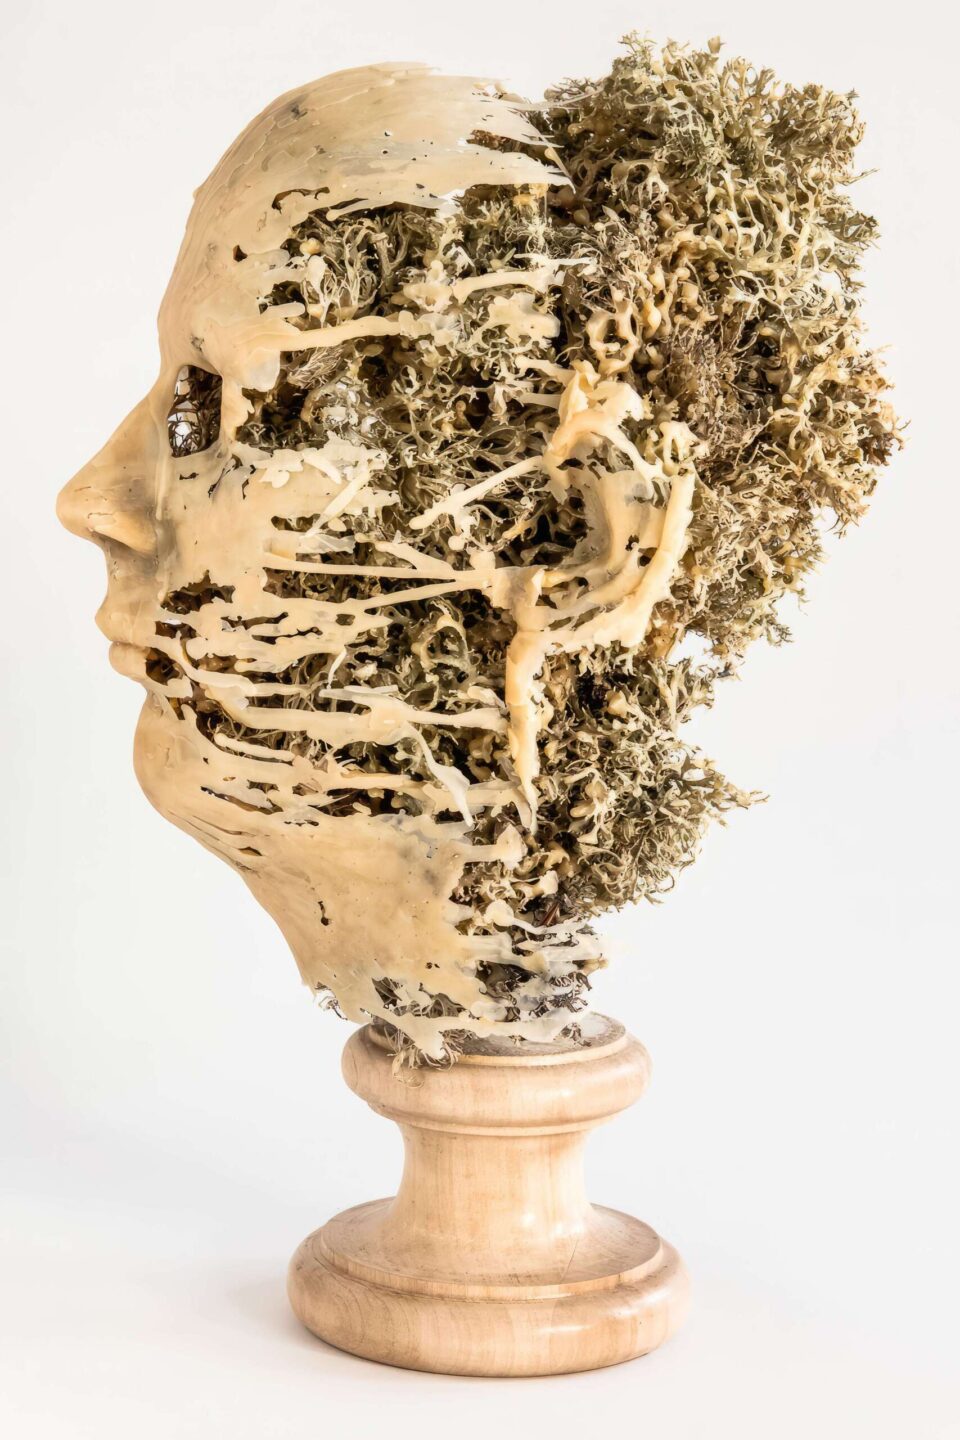 Usnea Fastigiata 1, 2015, cire, bois, lichens, 40x32x22 cm dos © Antoine Duhamel, Photographie 2